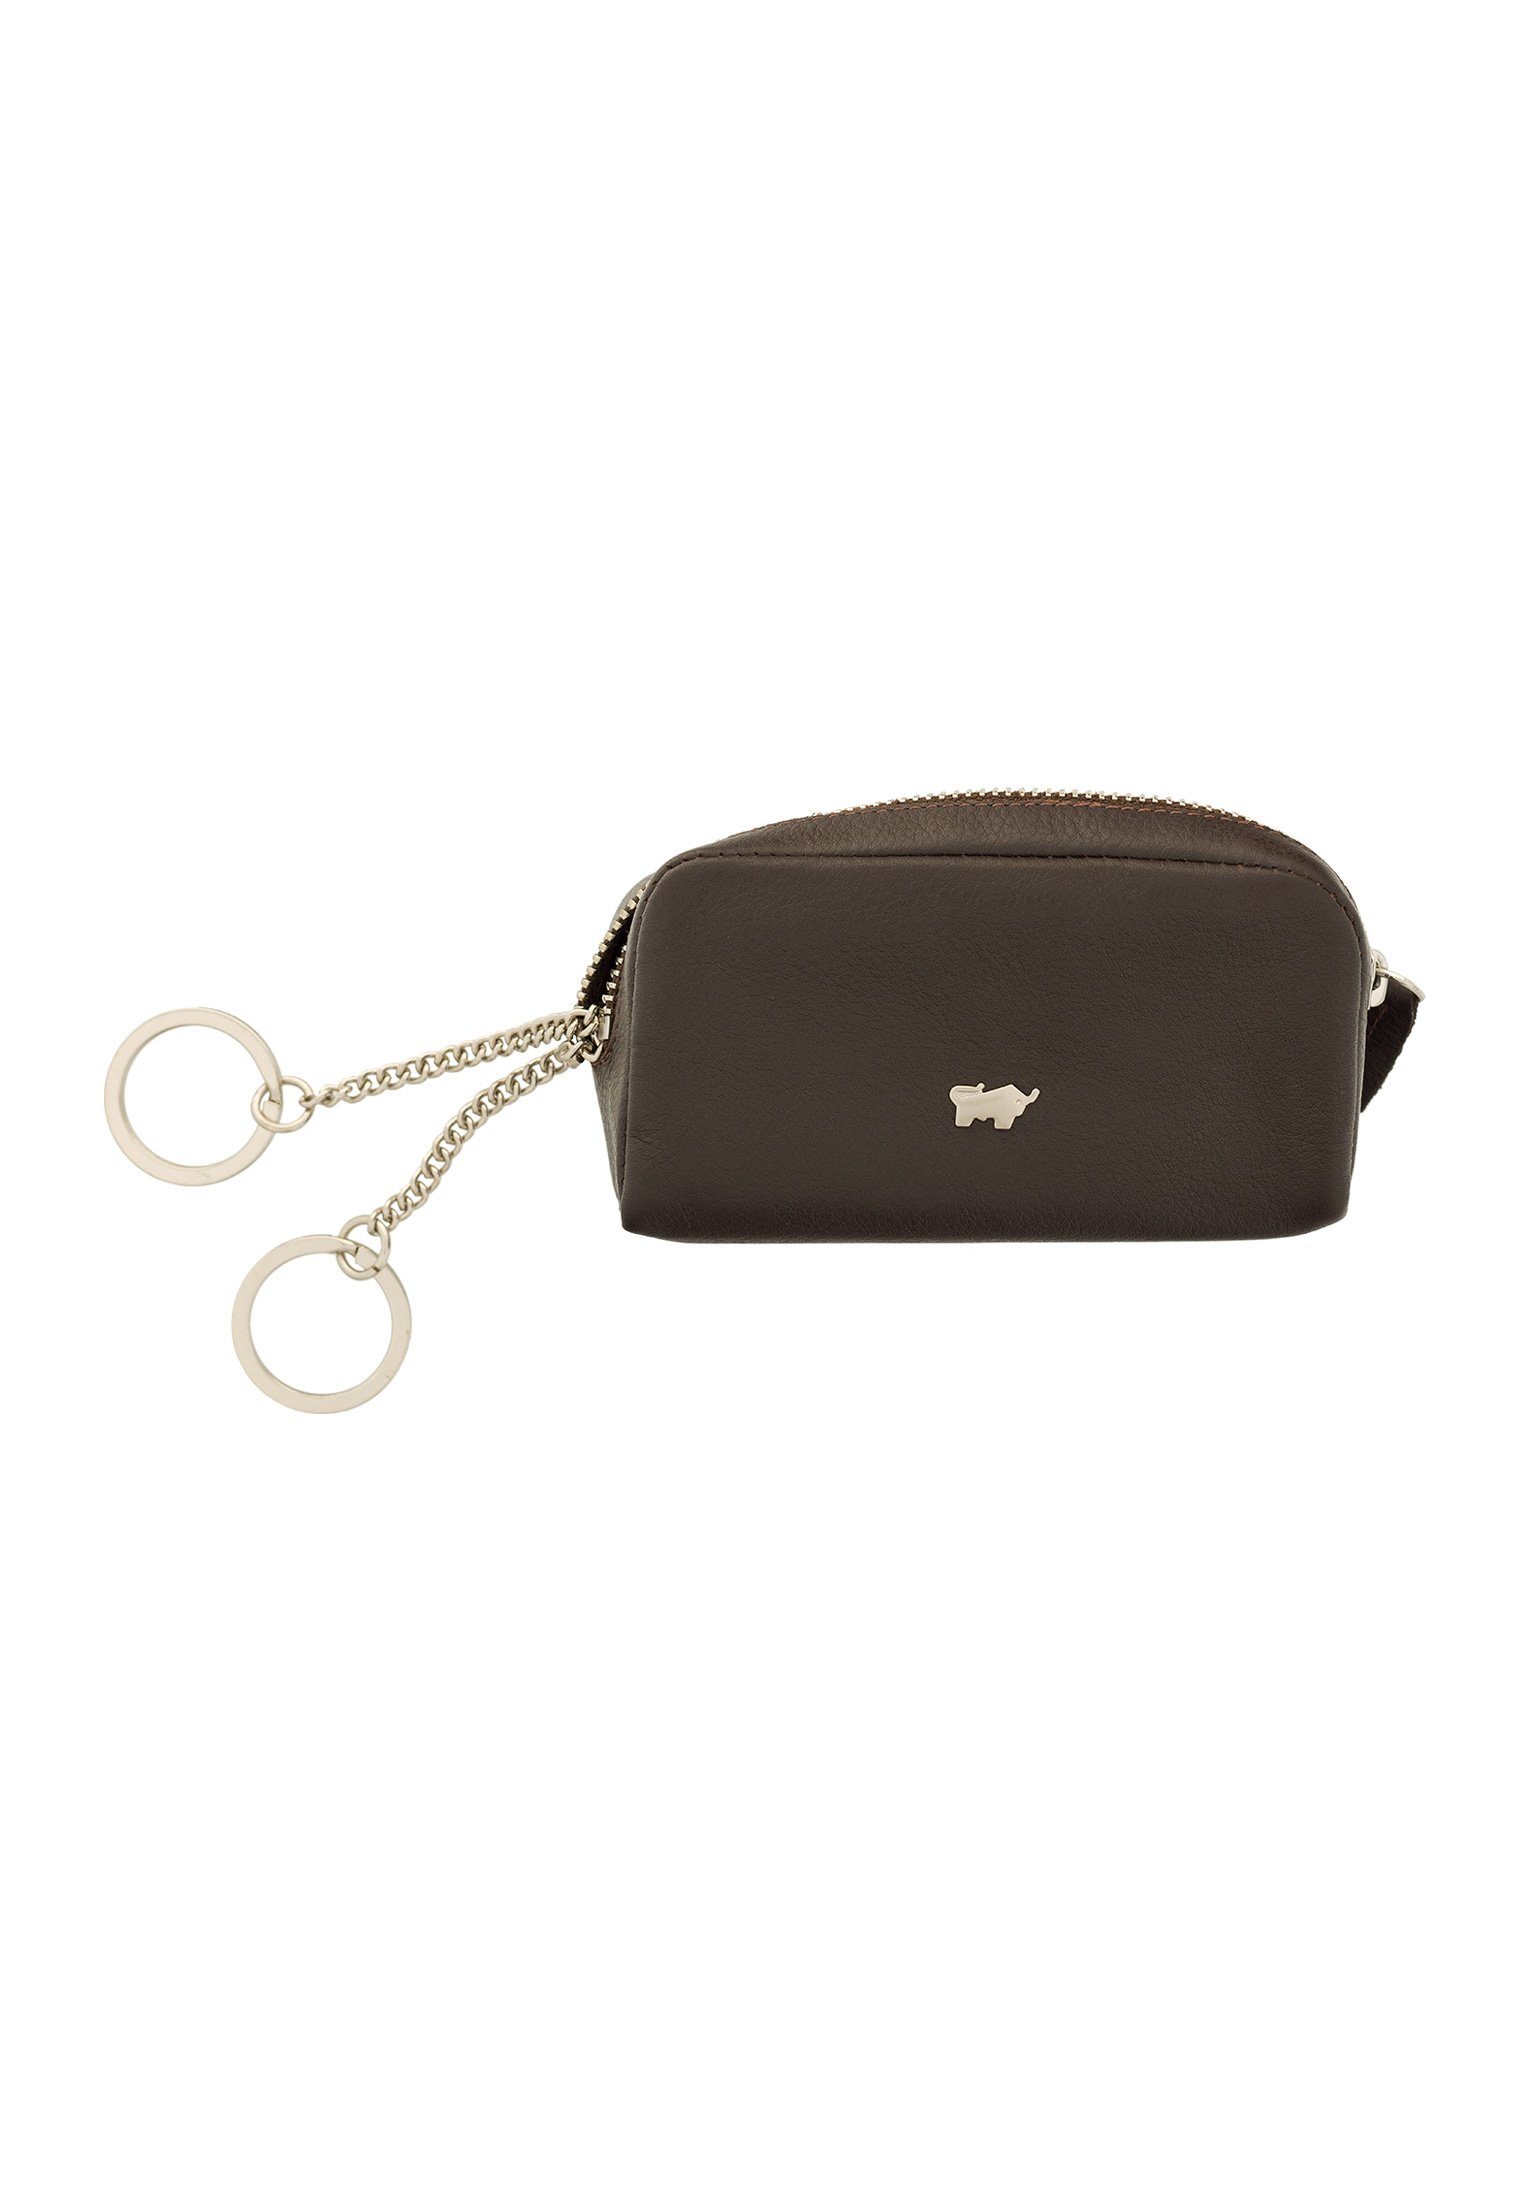 Damen Alle Damentaschen Braun Büffel Schlüsseltasche GOLF 2.0 Schlüsseletui M Zip, in klassischem Look